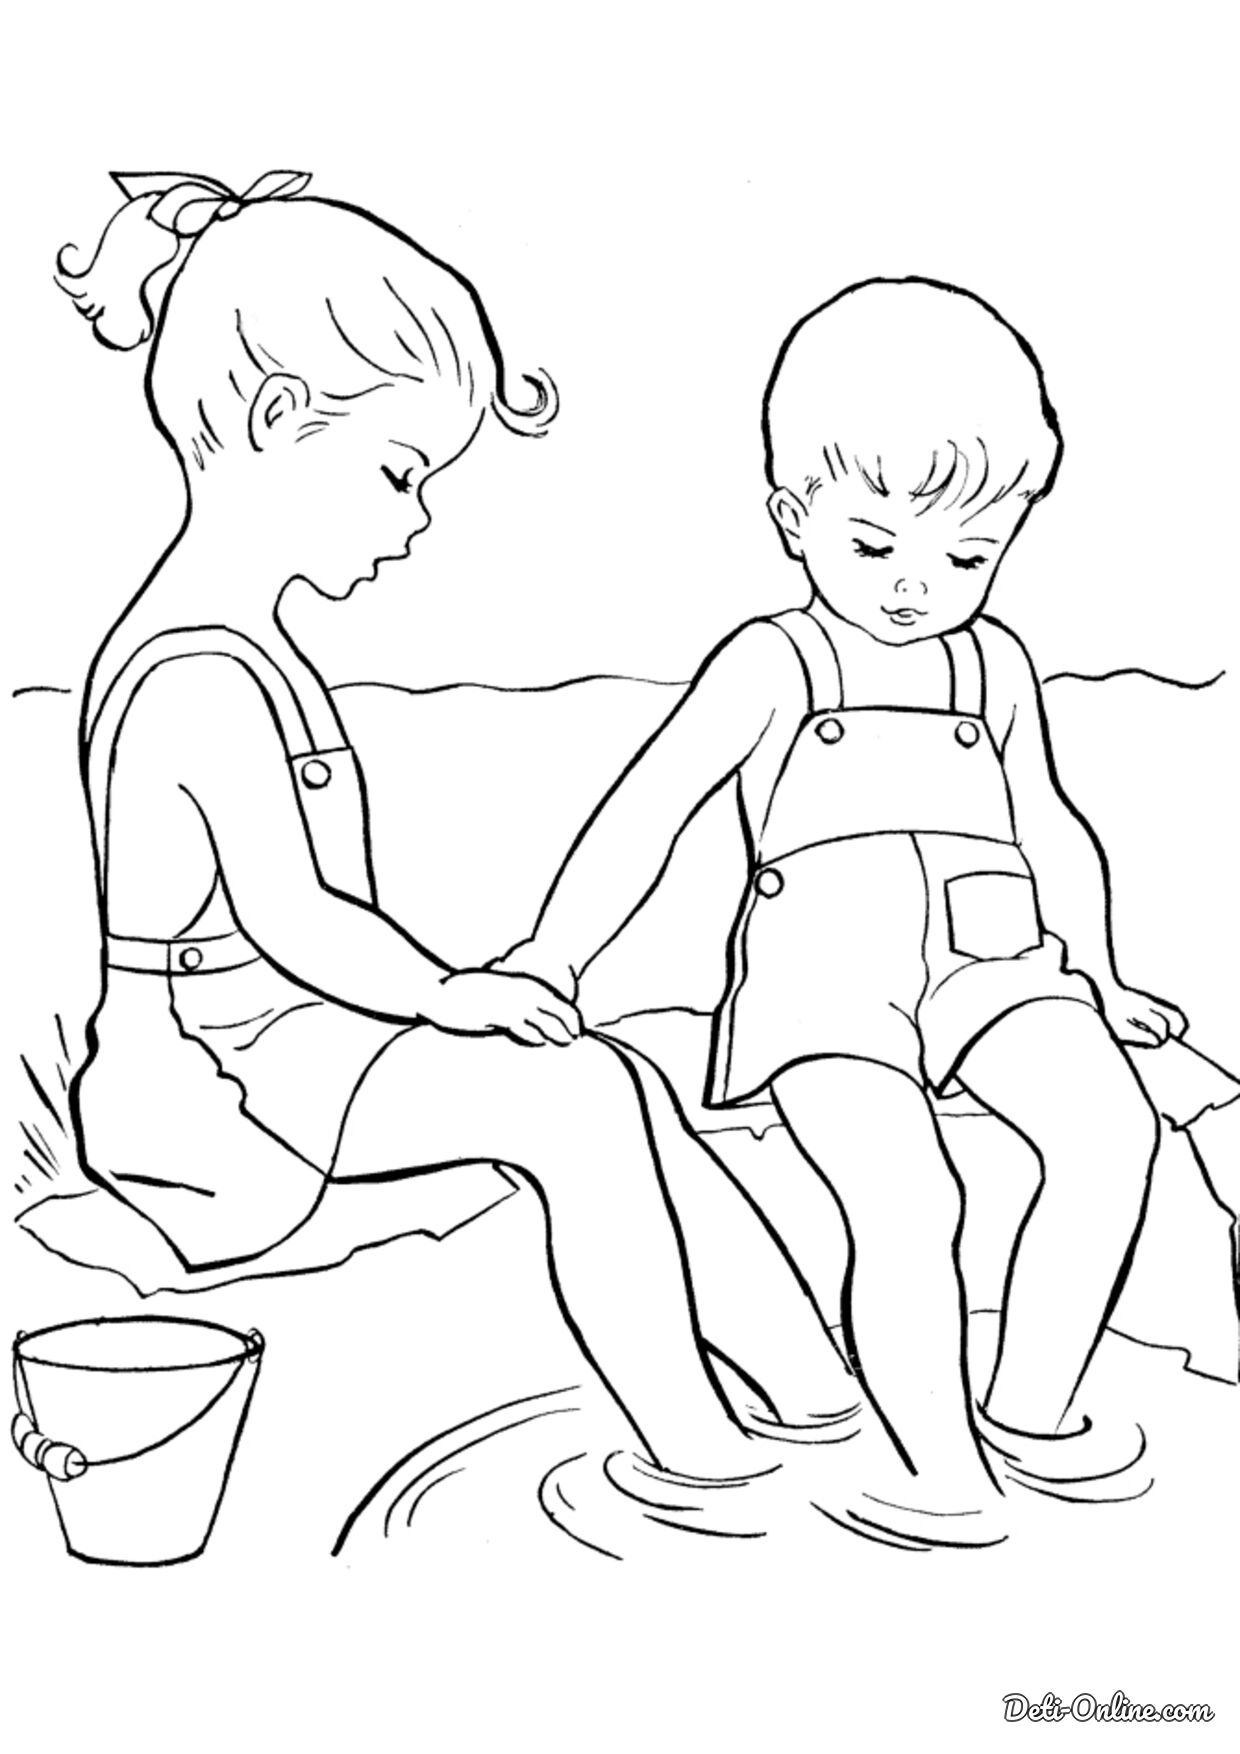 Раскраска девочка и мальчик с воздушными шарами распечатать